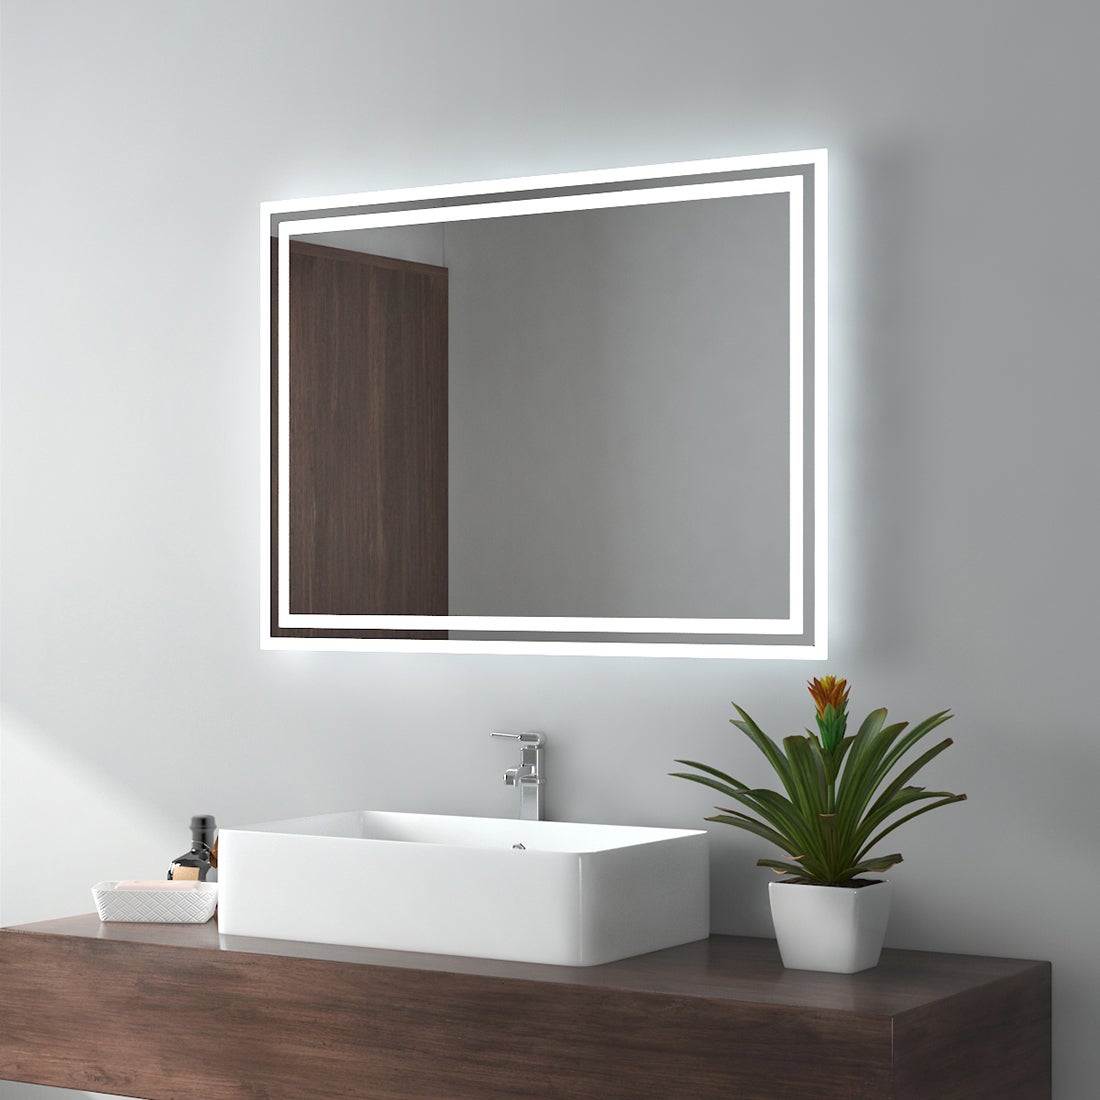 EMKE Badspiegel LED IP44 Wasserdicht Wandspiegel, 80x60cm, Kaltweißes/Warmweißes Licht, Knopfschalter, Beschlagfrei